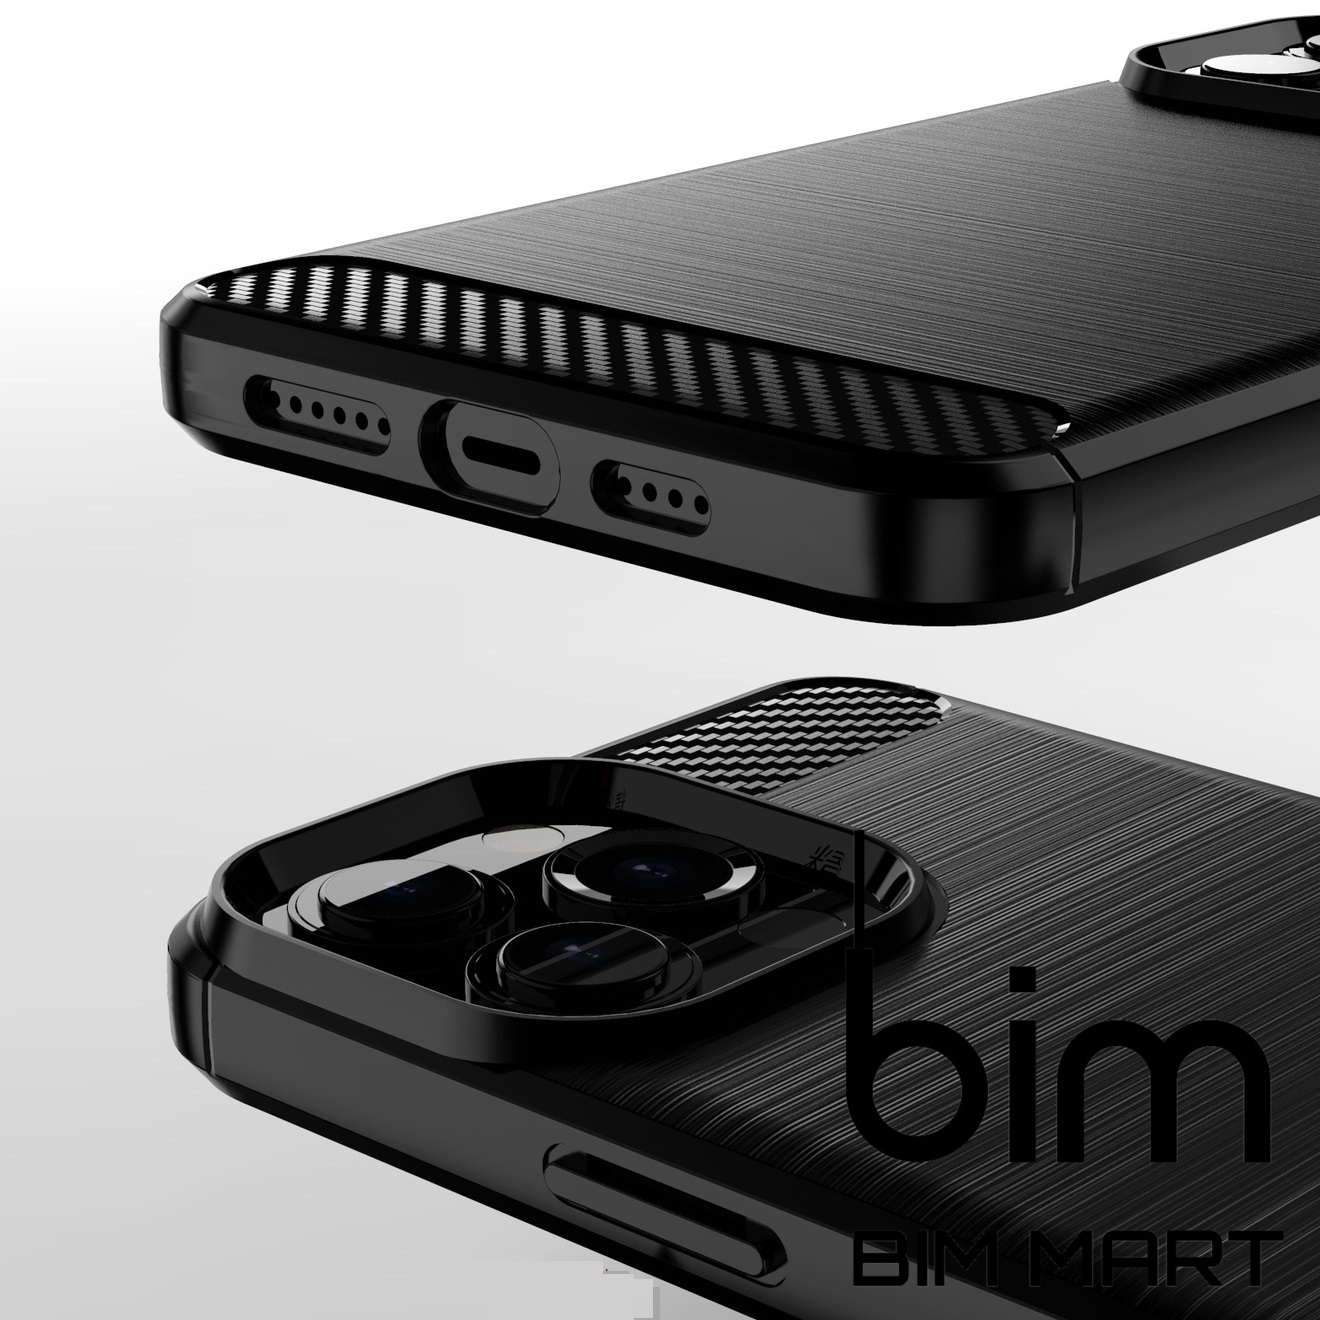 Ốp lưng Rugged Shield dành cho iPhone 13 Pro Max cao cấp chống sốc - Hàng Nhập Khẩu